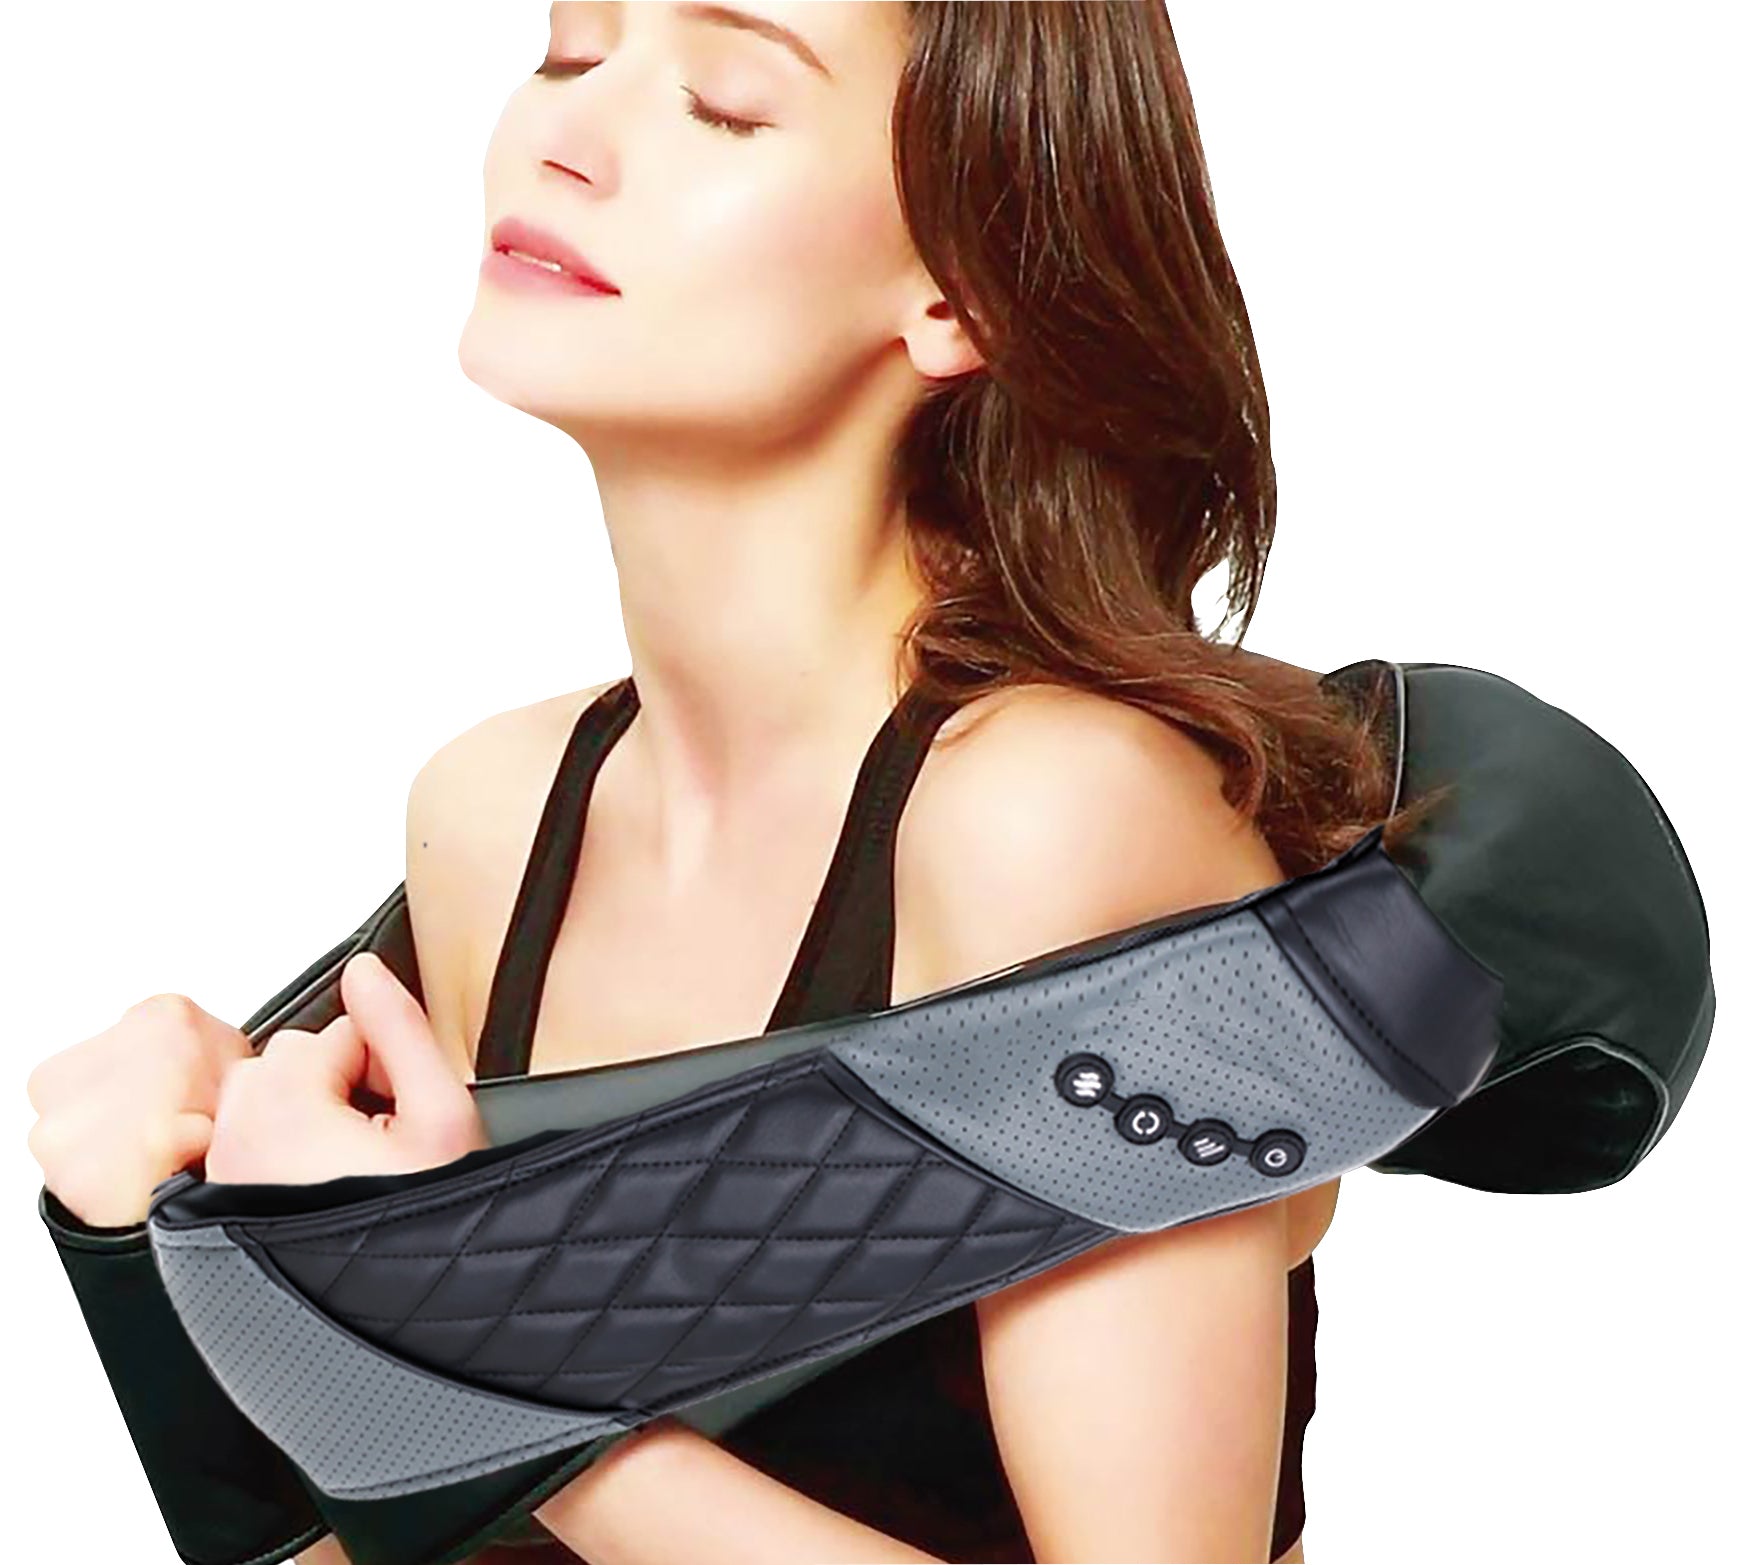 TESMED CERVICAL TECHNOLOGY 4.0 MASSAGER : masseur relaxant pour le cou et les épaules, technologie avancée.